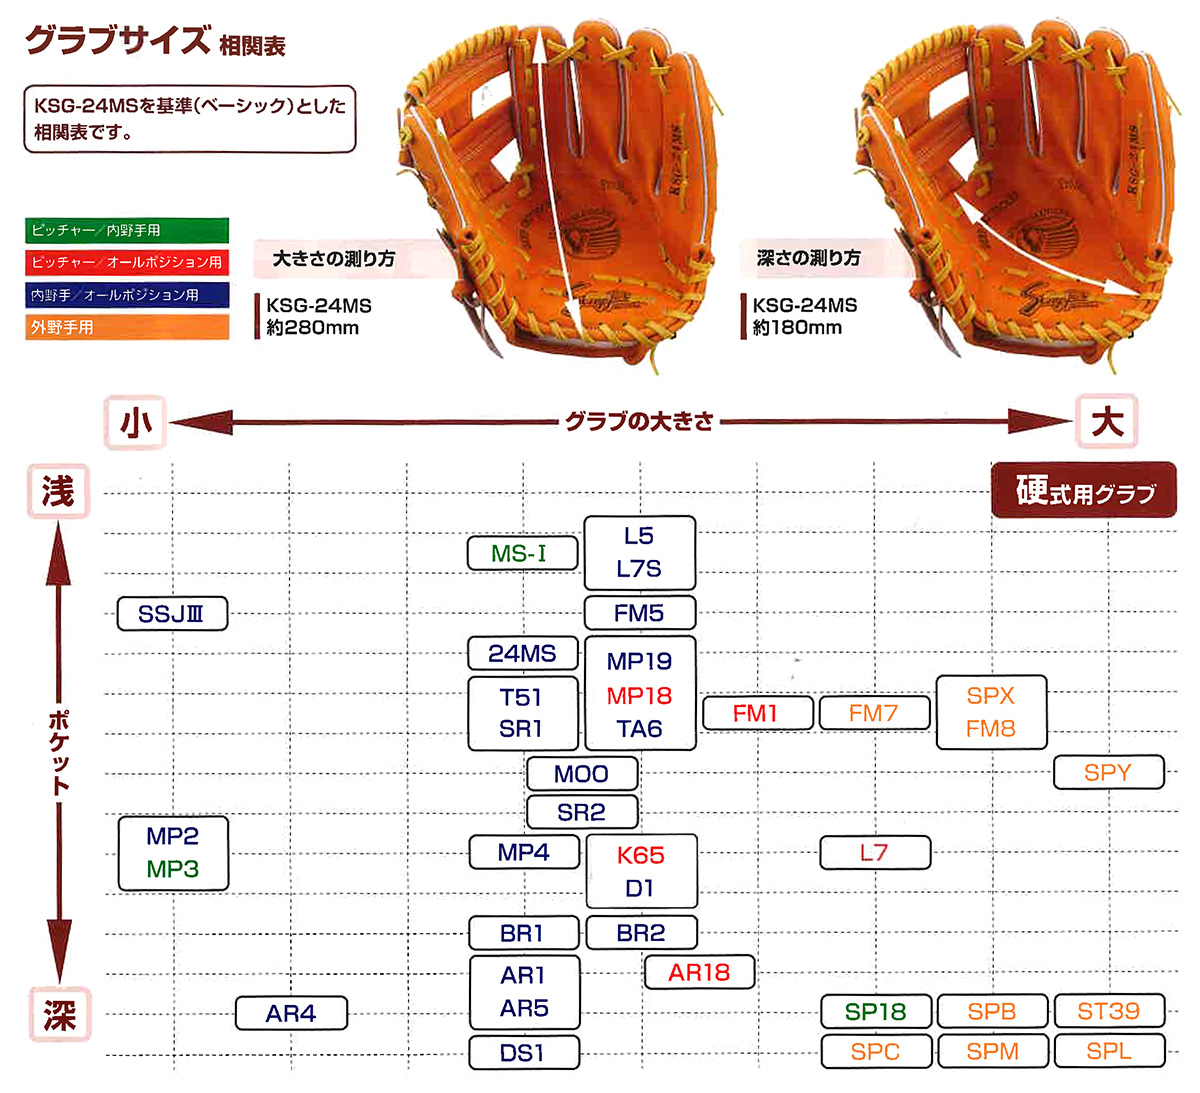 久保田スラッガー 硬式オーダーグローブグラブ 野球用品専門店スワロースポーツ